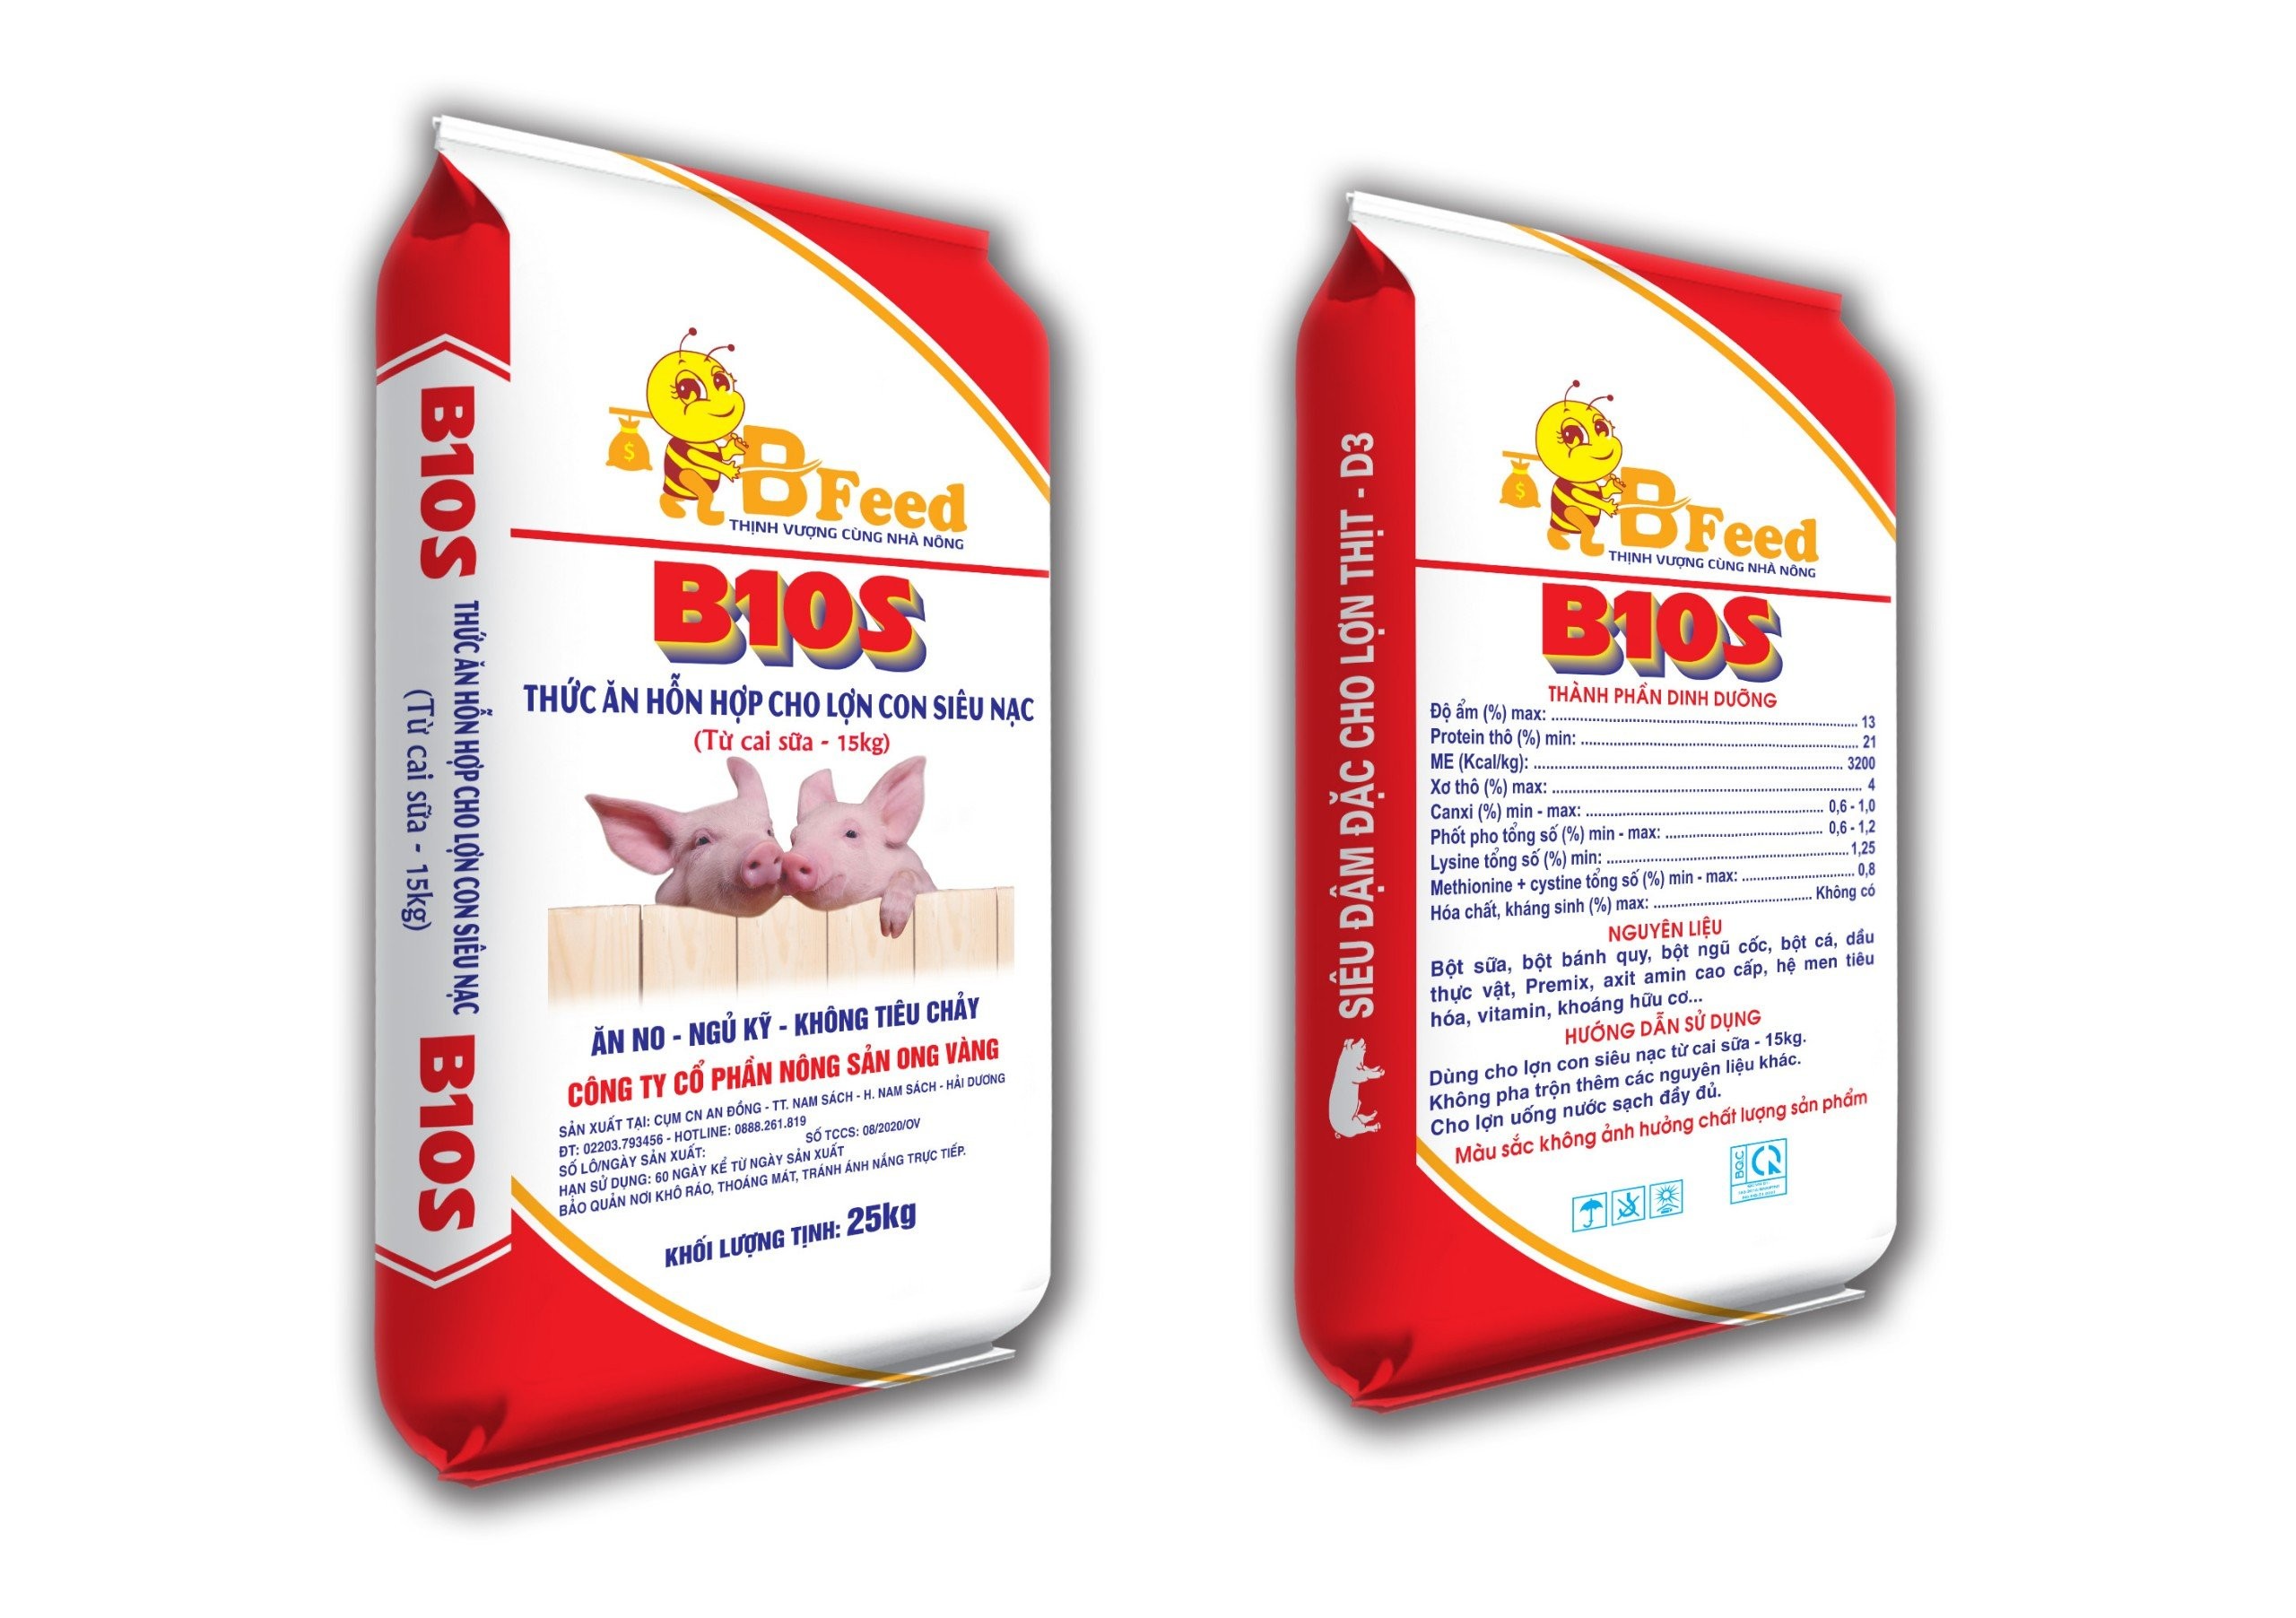 B10S - Hỗn hợp cho lợn con siêu nạc (Từ cai sữa - 15kg)